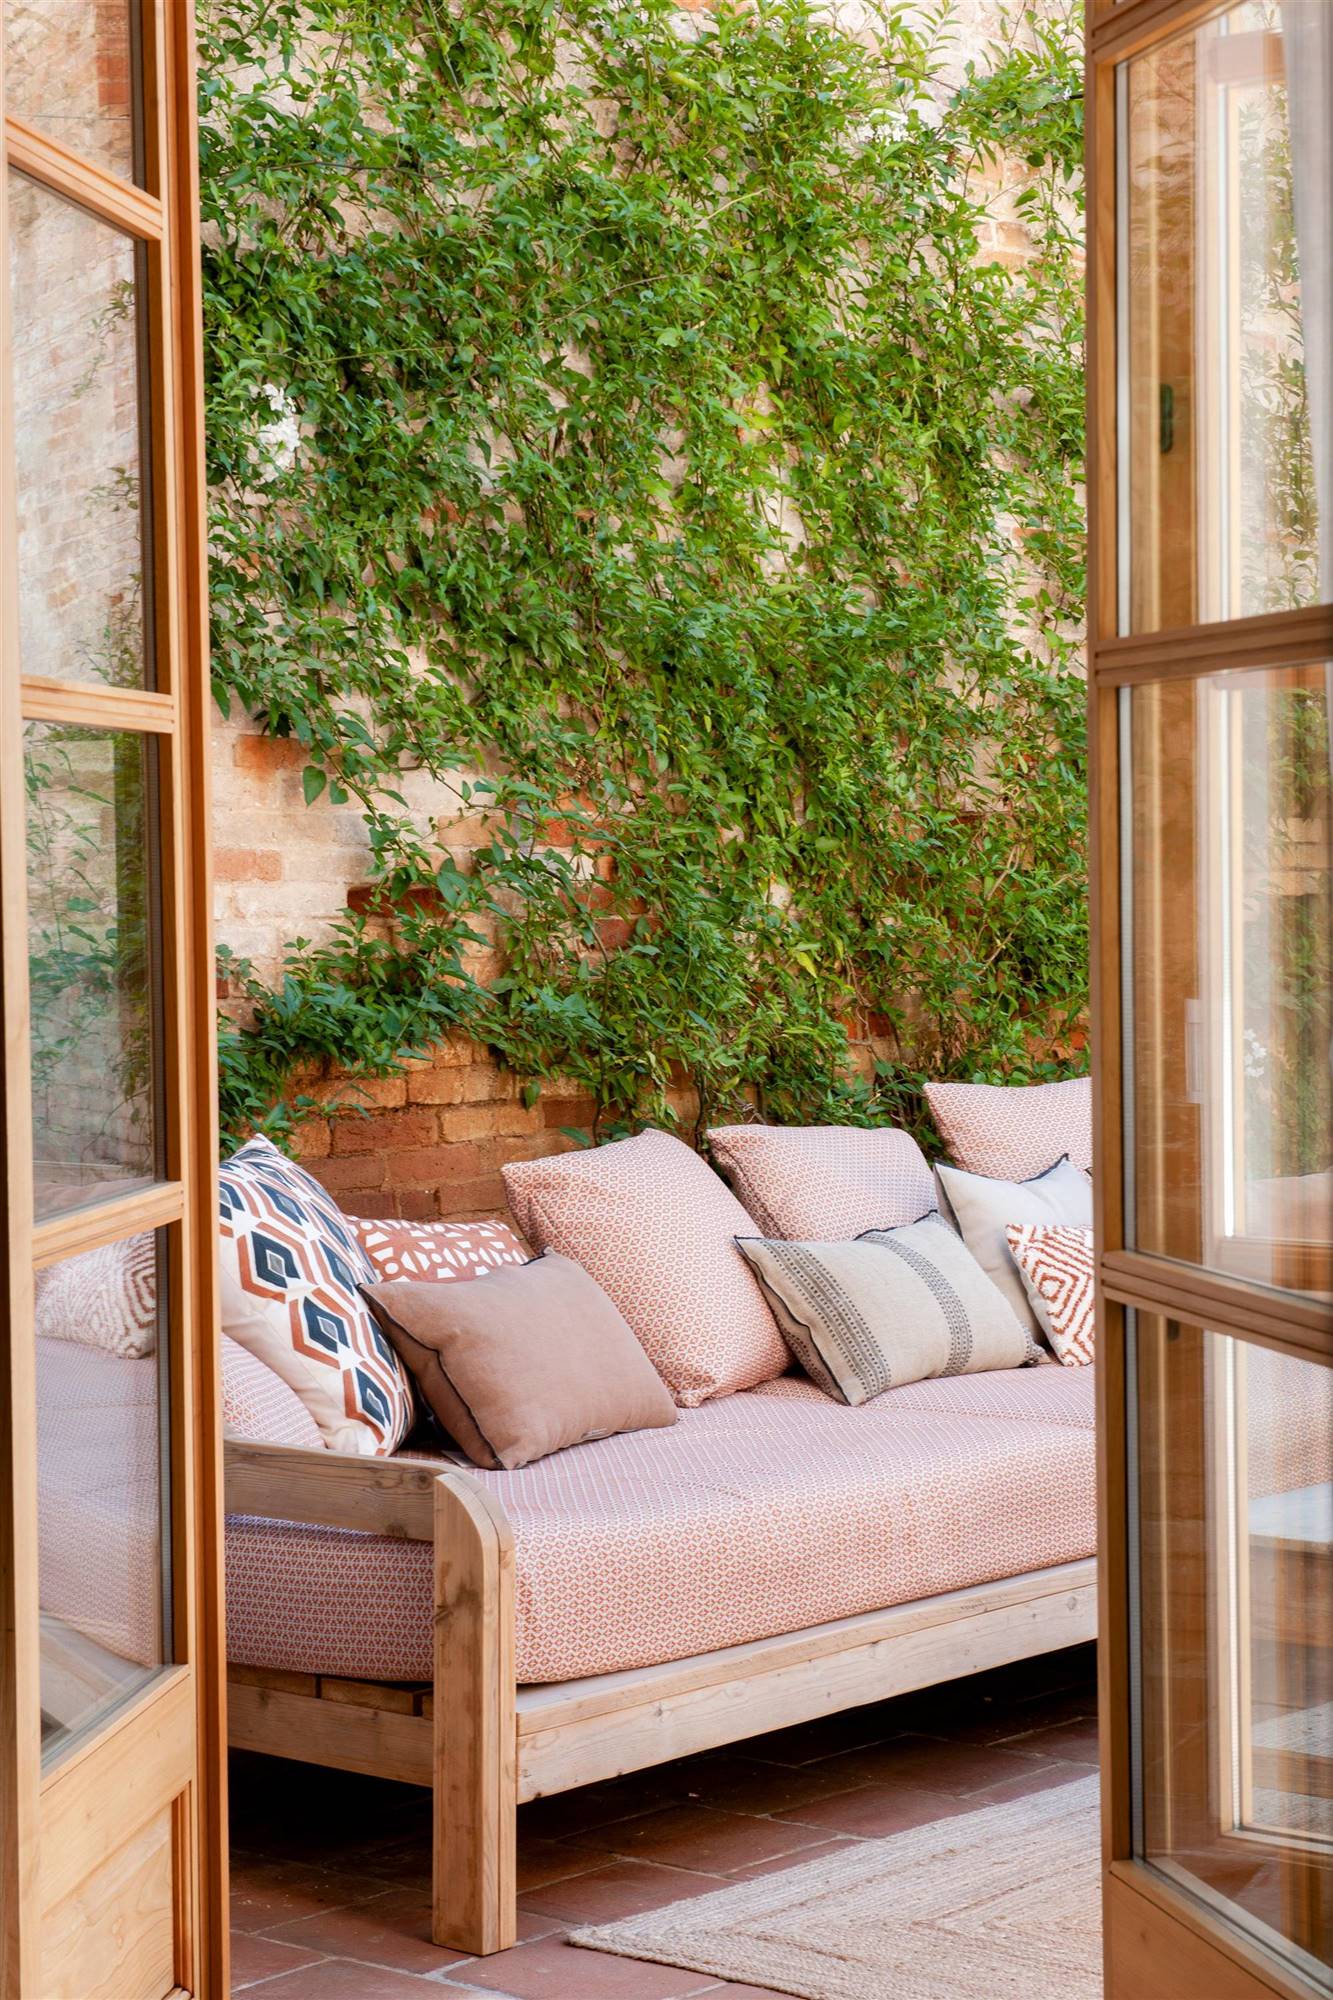 terraza-con-sofa-de-madera-con-asiento-y-cojines-estampados-00510330 O